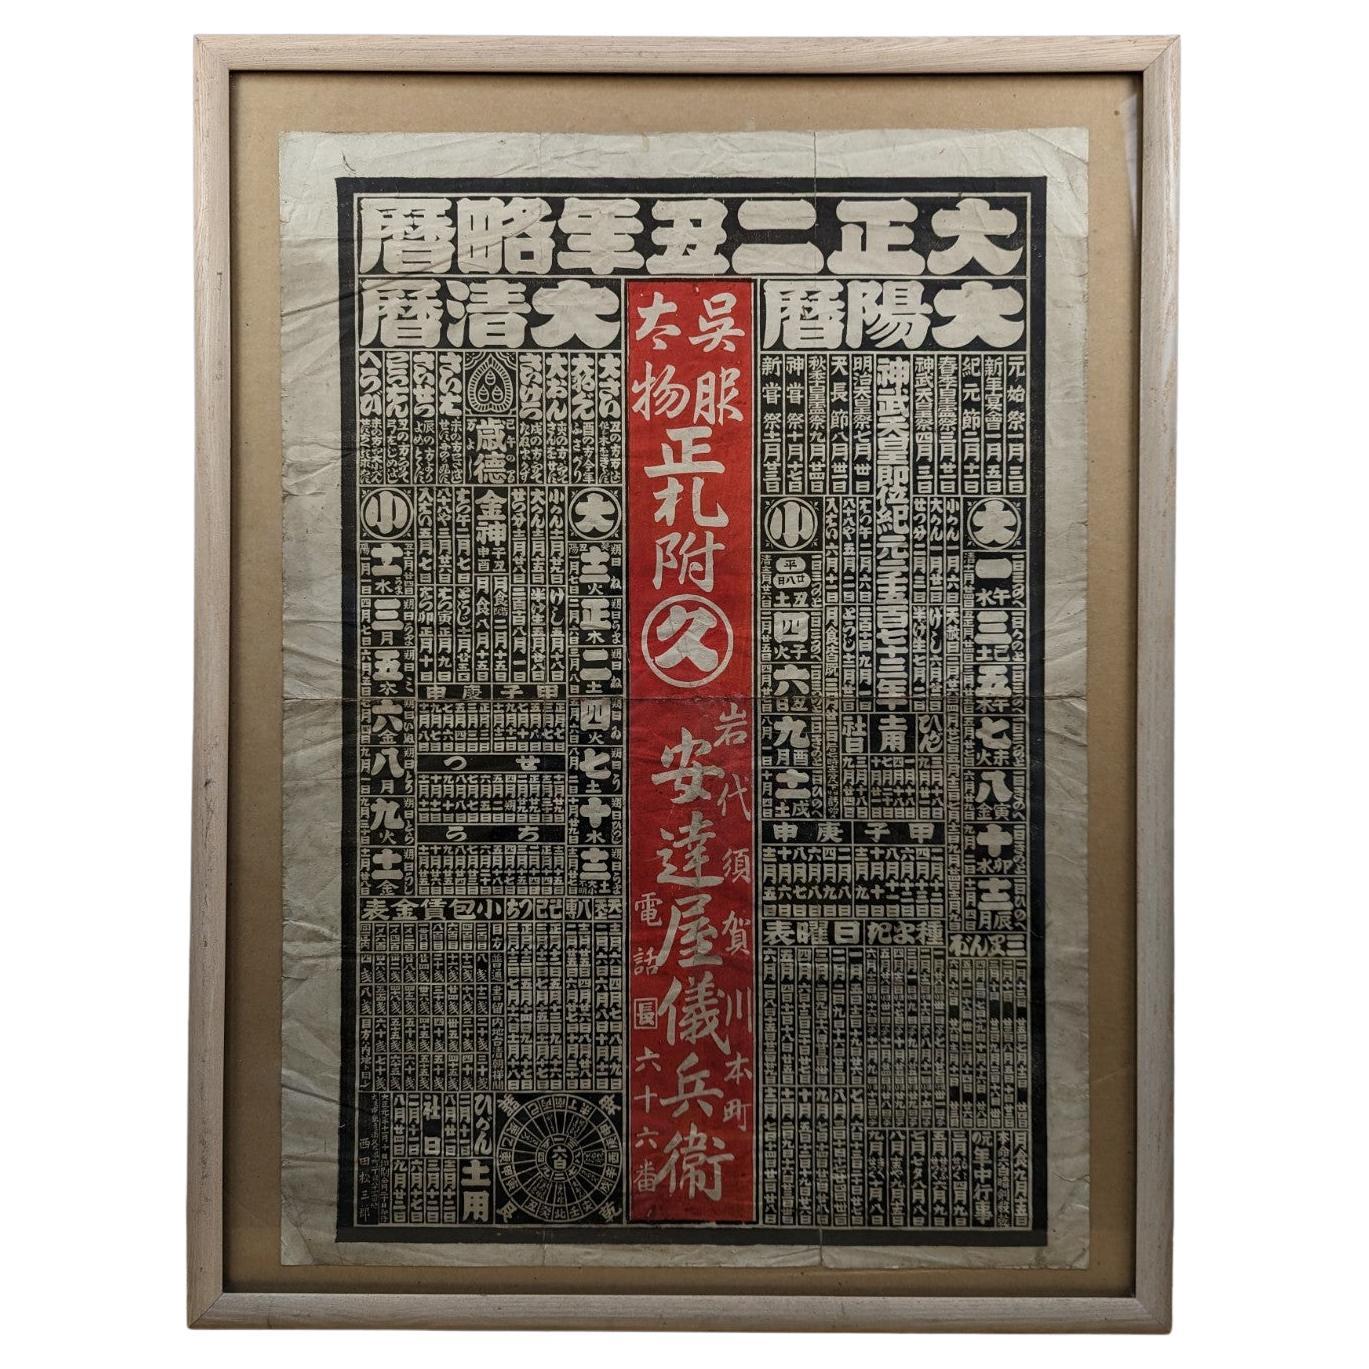 Un calendrier publicitaire japonais en forme de bloc (1912) provenant d'un magasin de kimono